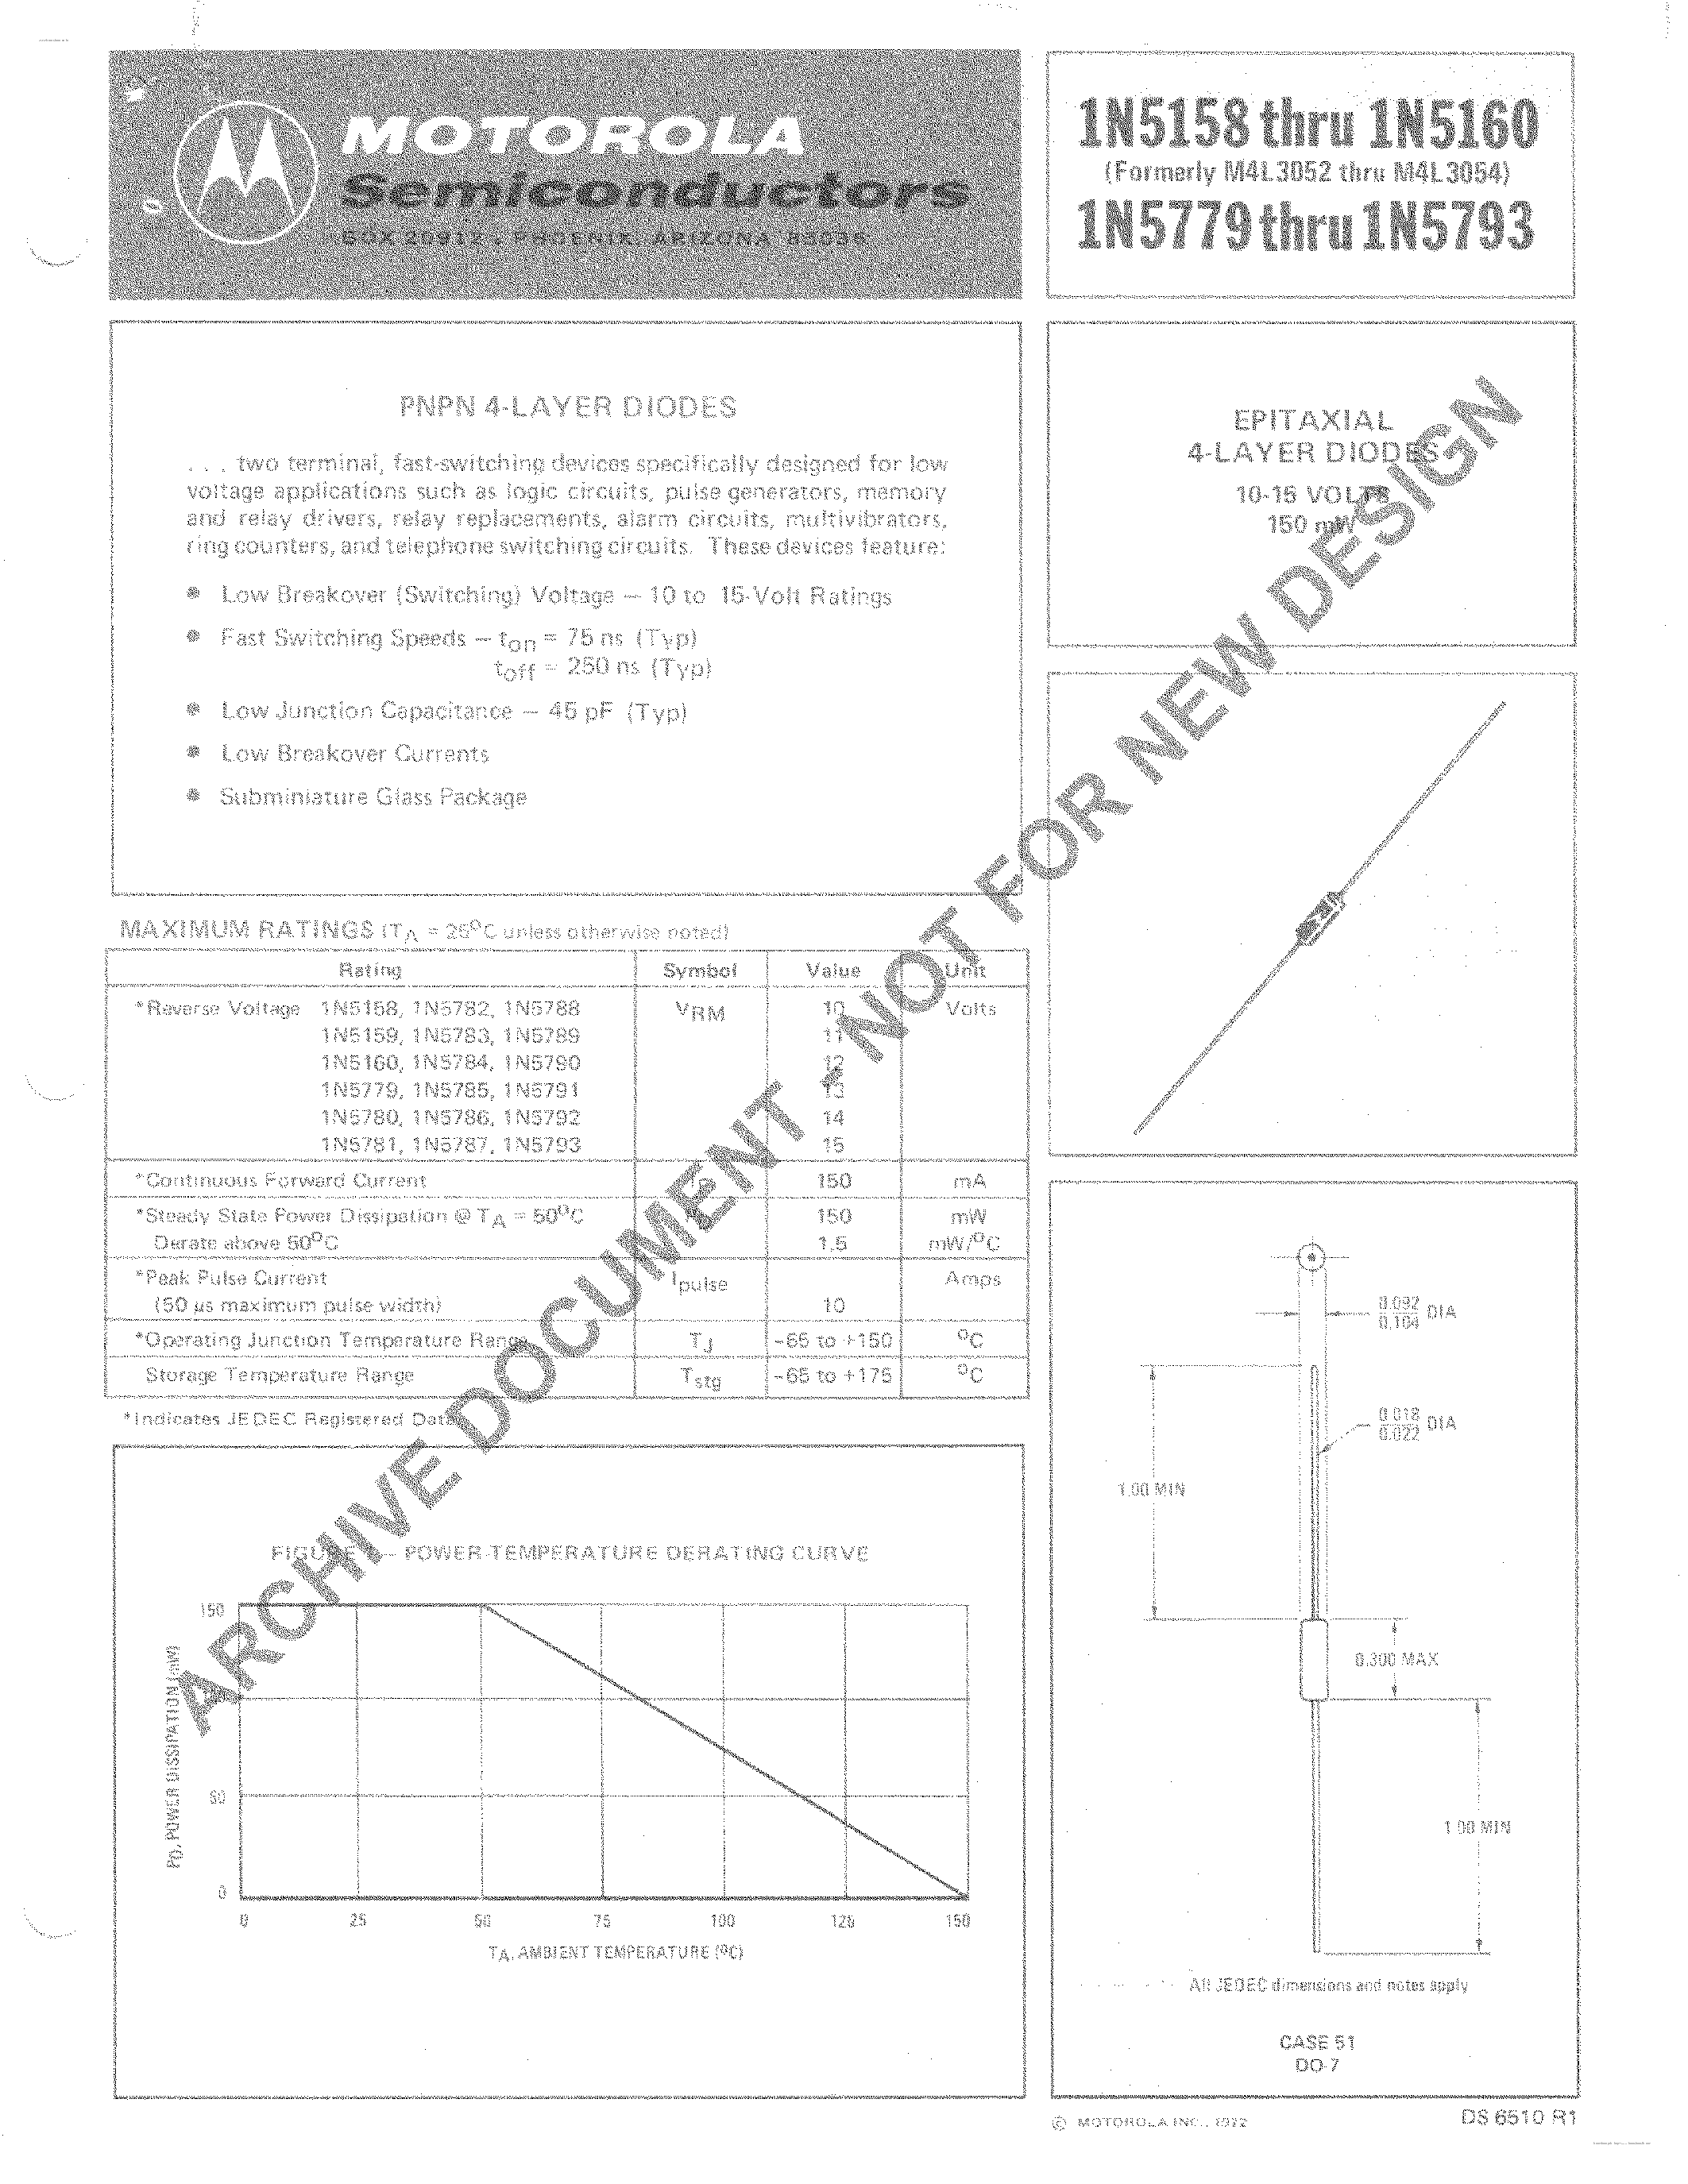 Datasheet 1N5158 - (1N5779 - 1N5793) PNPN 4 Layer Diodes page 1